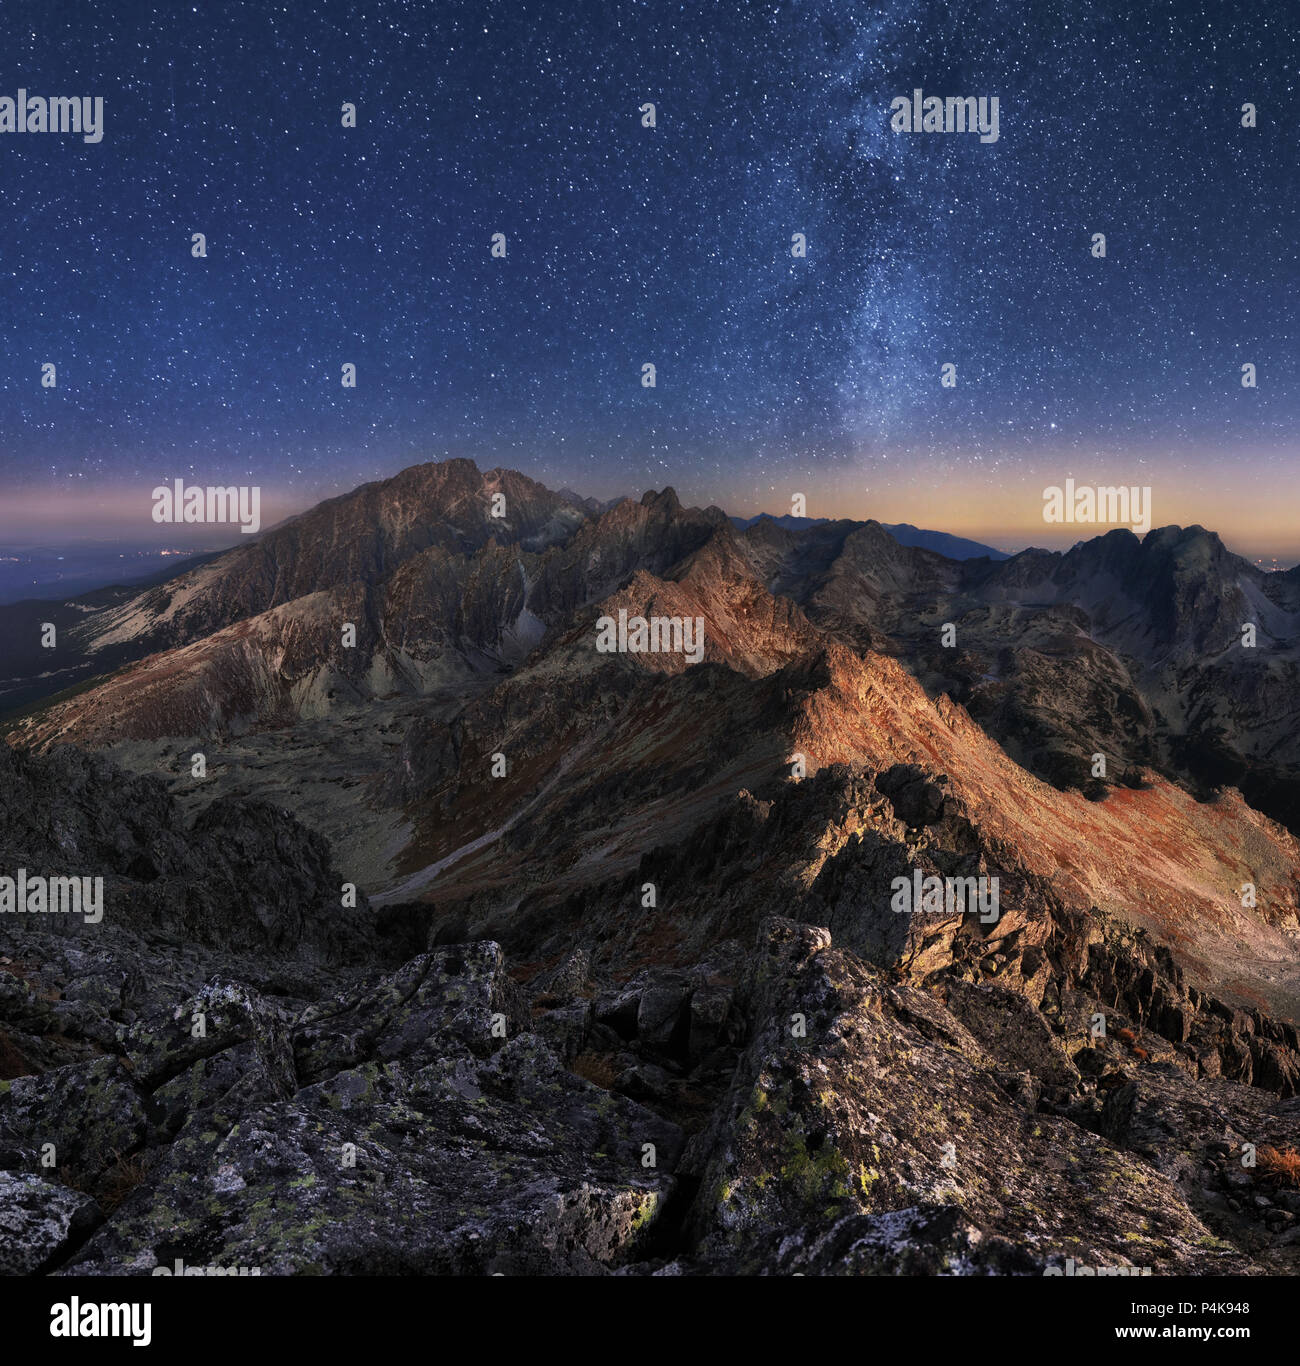 Mountain landscape with night sky and Mliky way, Slovakia Tatras from peak Slavkovsky stit Stock Photo